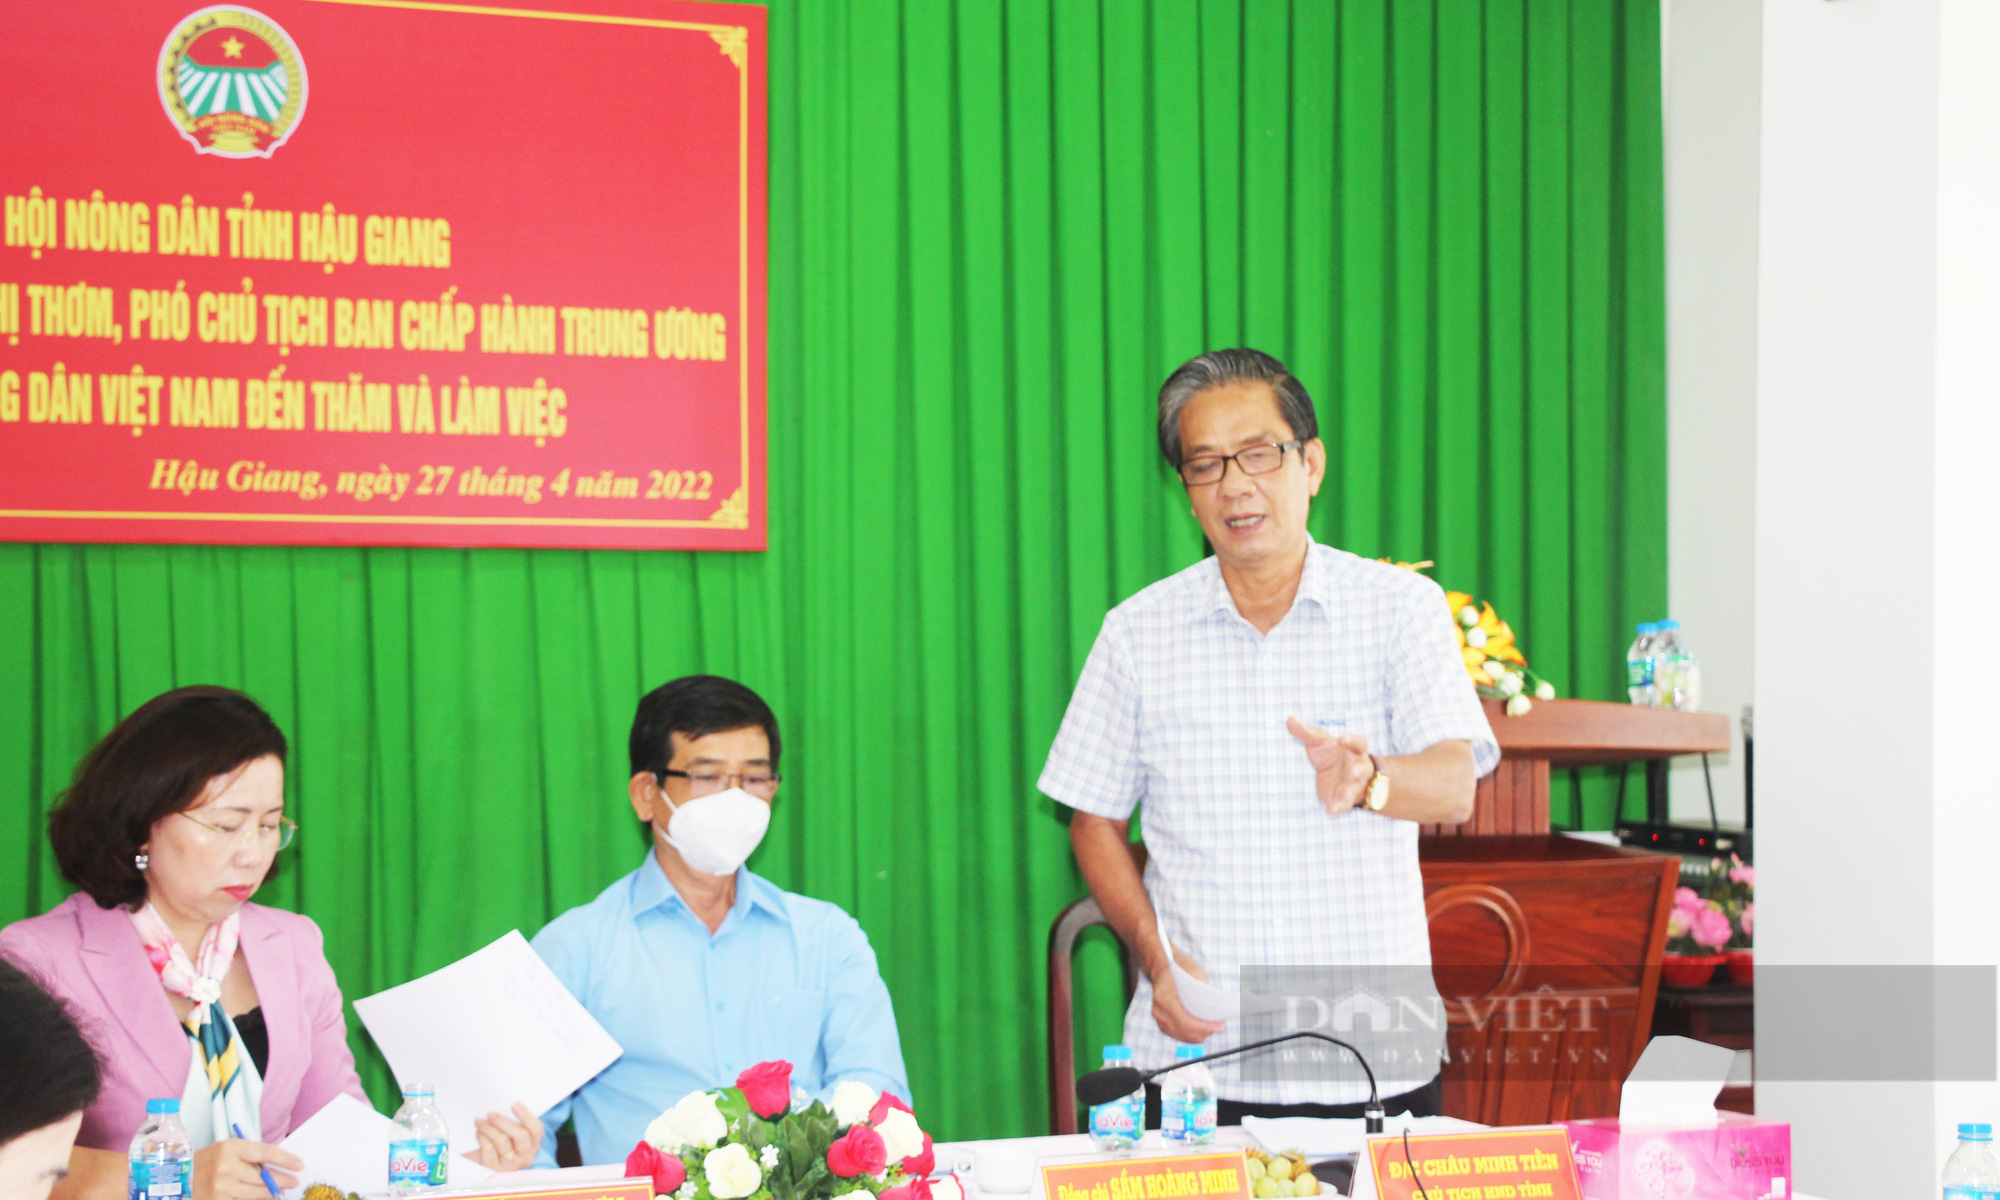 Phó Chủ tịch Hội NDVN Bùi Thị Thơm: Cần quan tâm hơn đến câu chuyện tiêu thụ nông sản cho nông dân Hậu Giang - Ảnh 2.